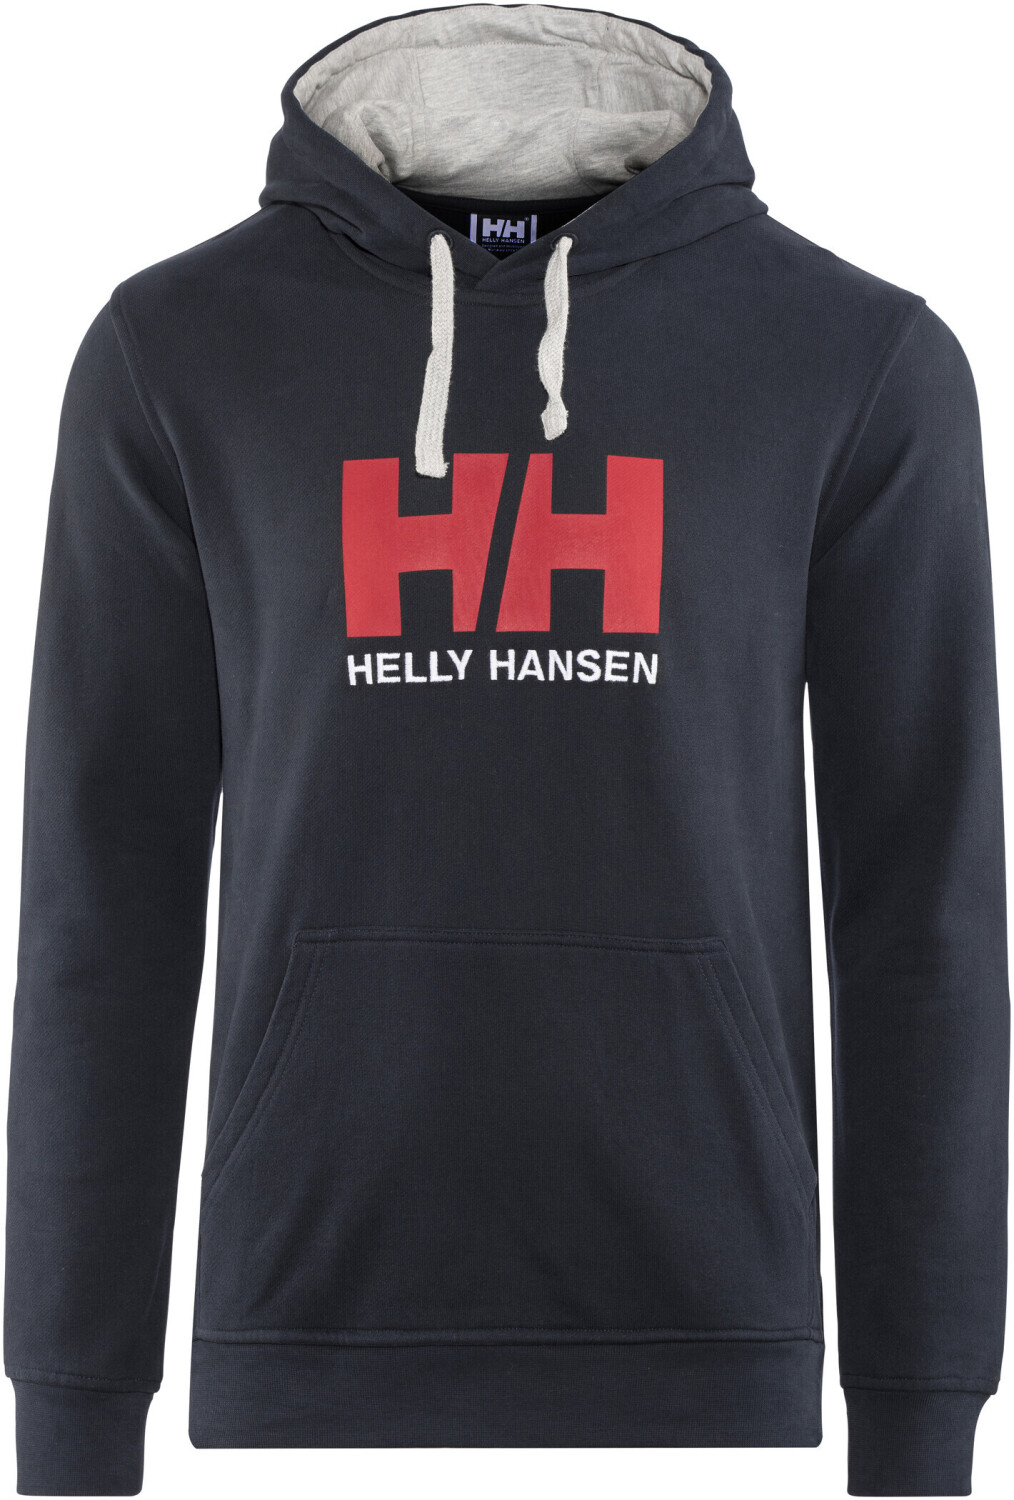 2023 Helly Hansen Sudadera Con Capucha Hh Logo 33977 Para Hombre - Roja -  Navegación